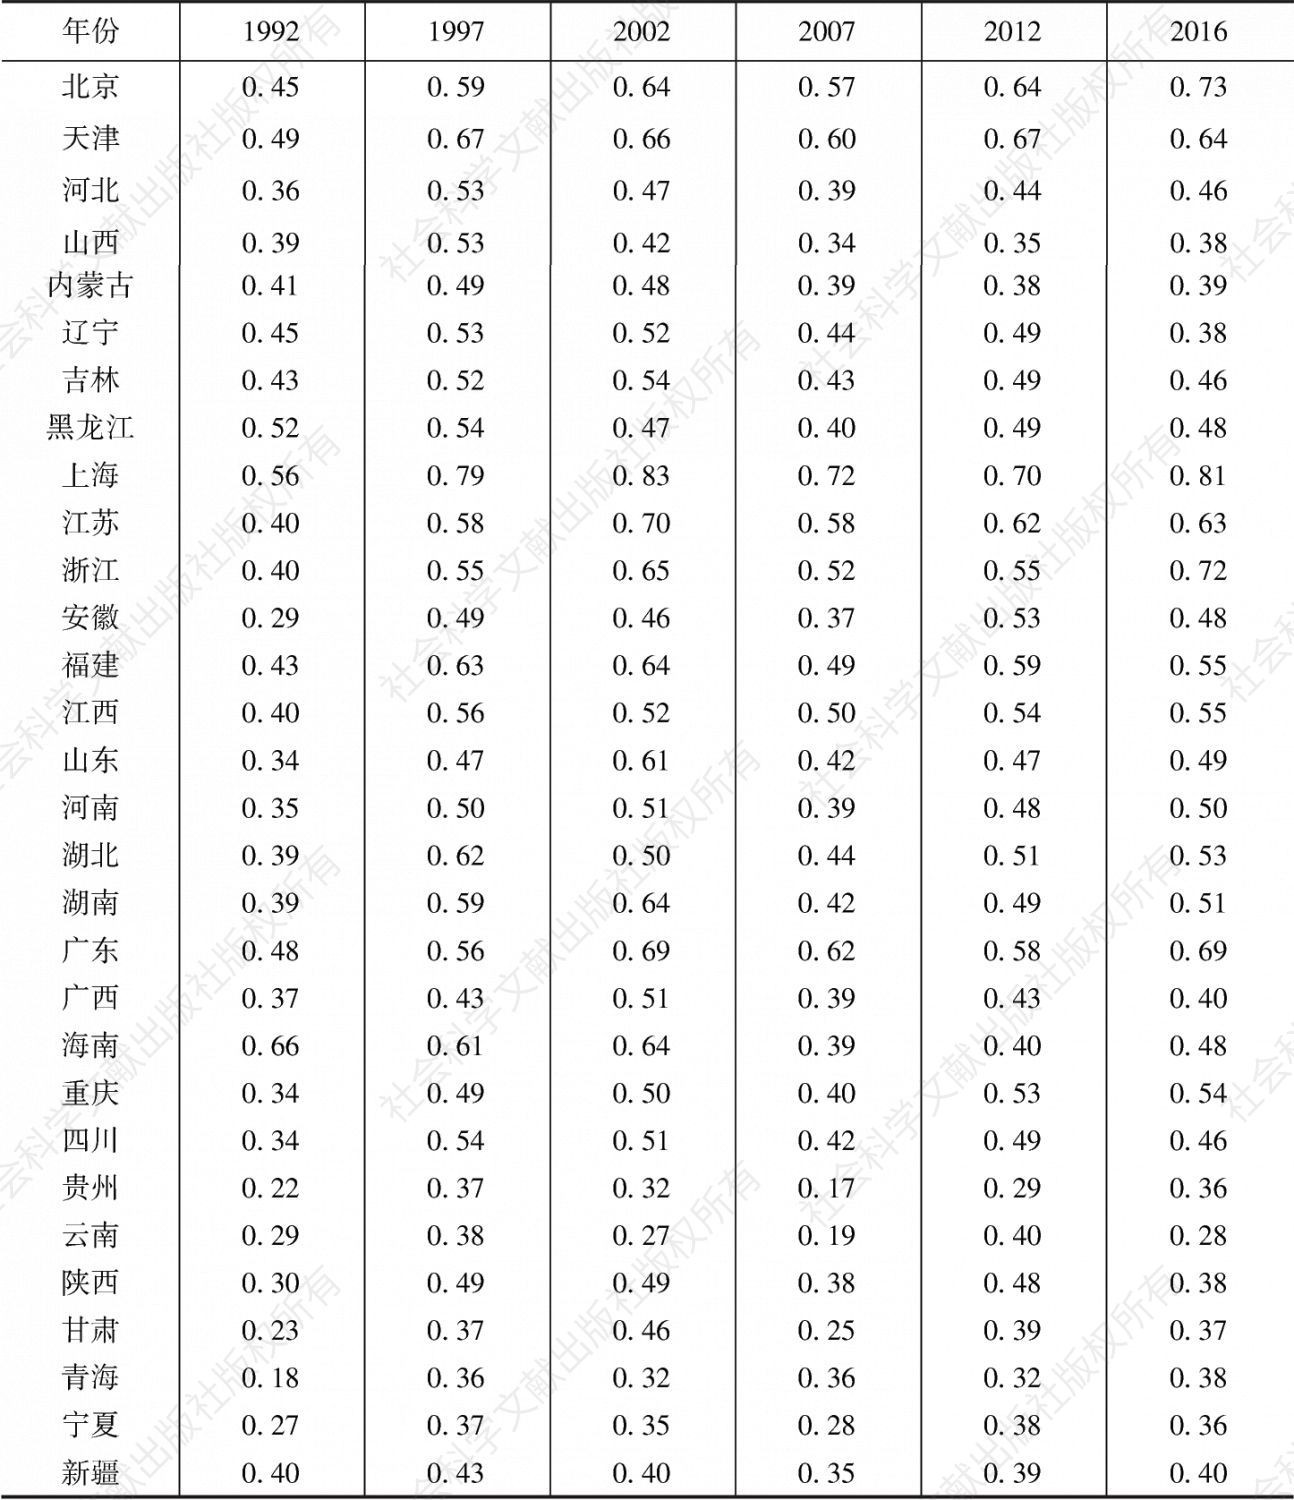 表1 代表性年份各省份经济增长质量指数